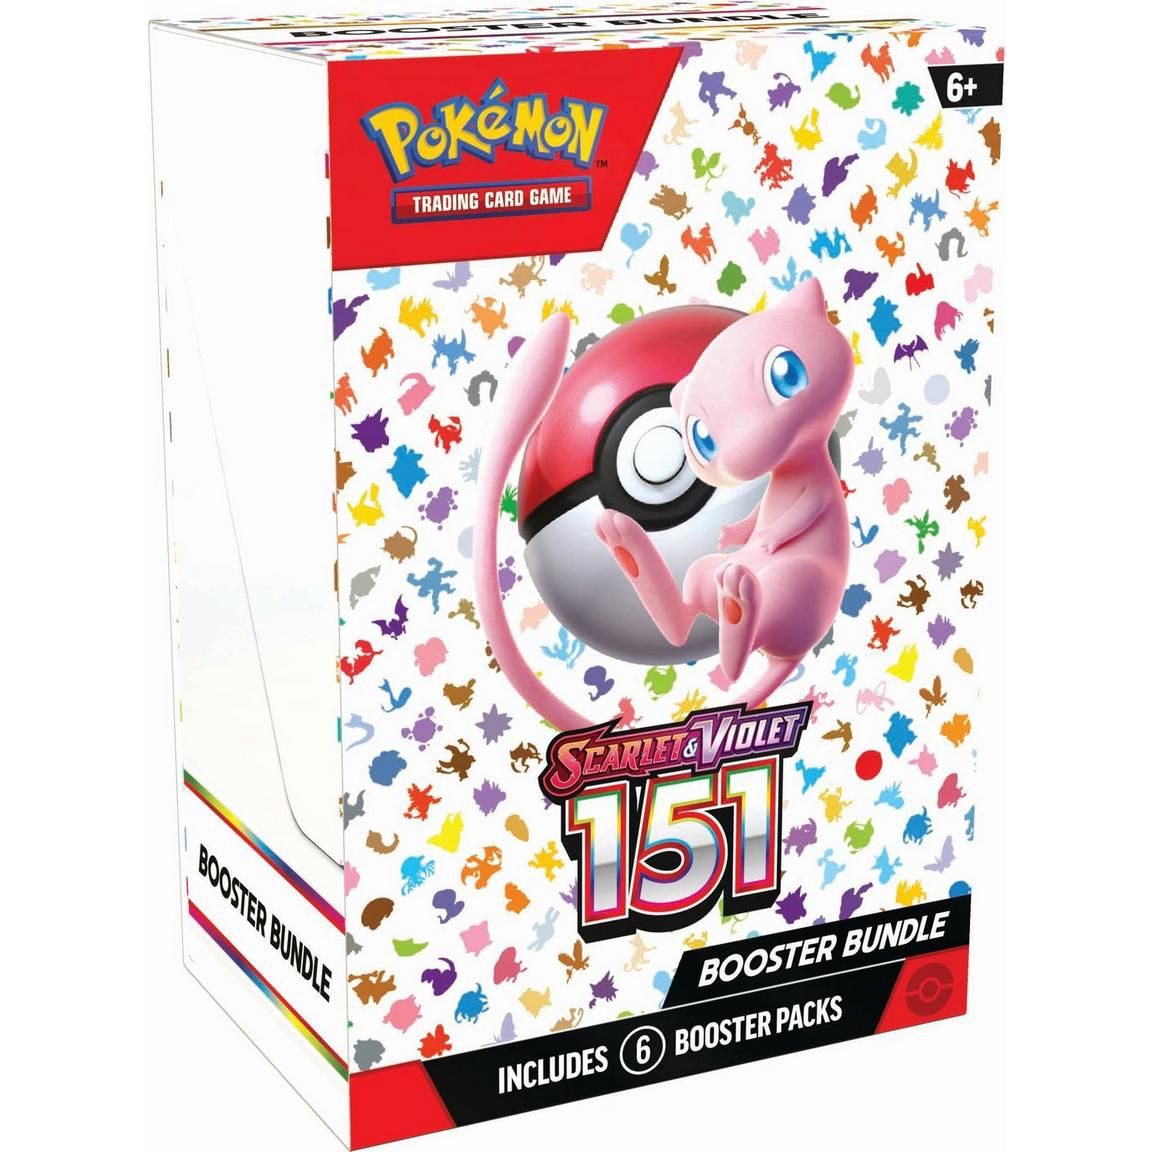 En mindre låda med Pokémon Scarlet och Violet: 151 Collection TCG boosterpack med mew och många andra Pokémon-silhuetter på framsidan av lådan